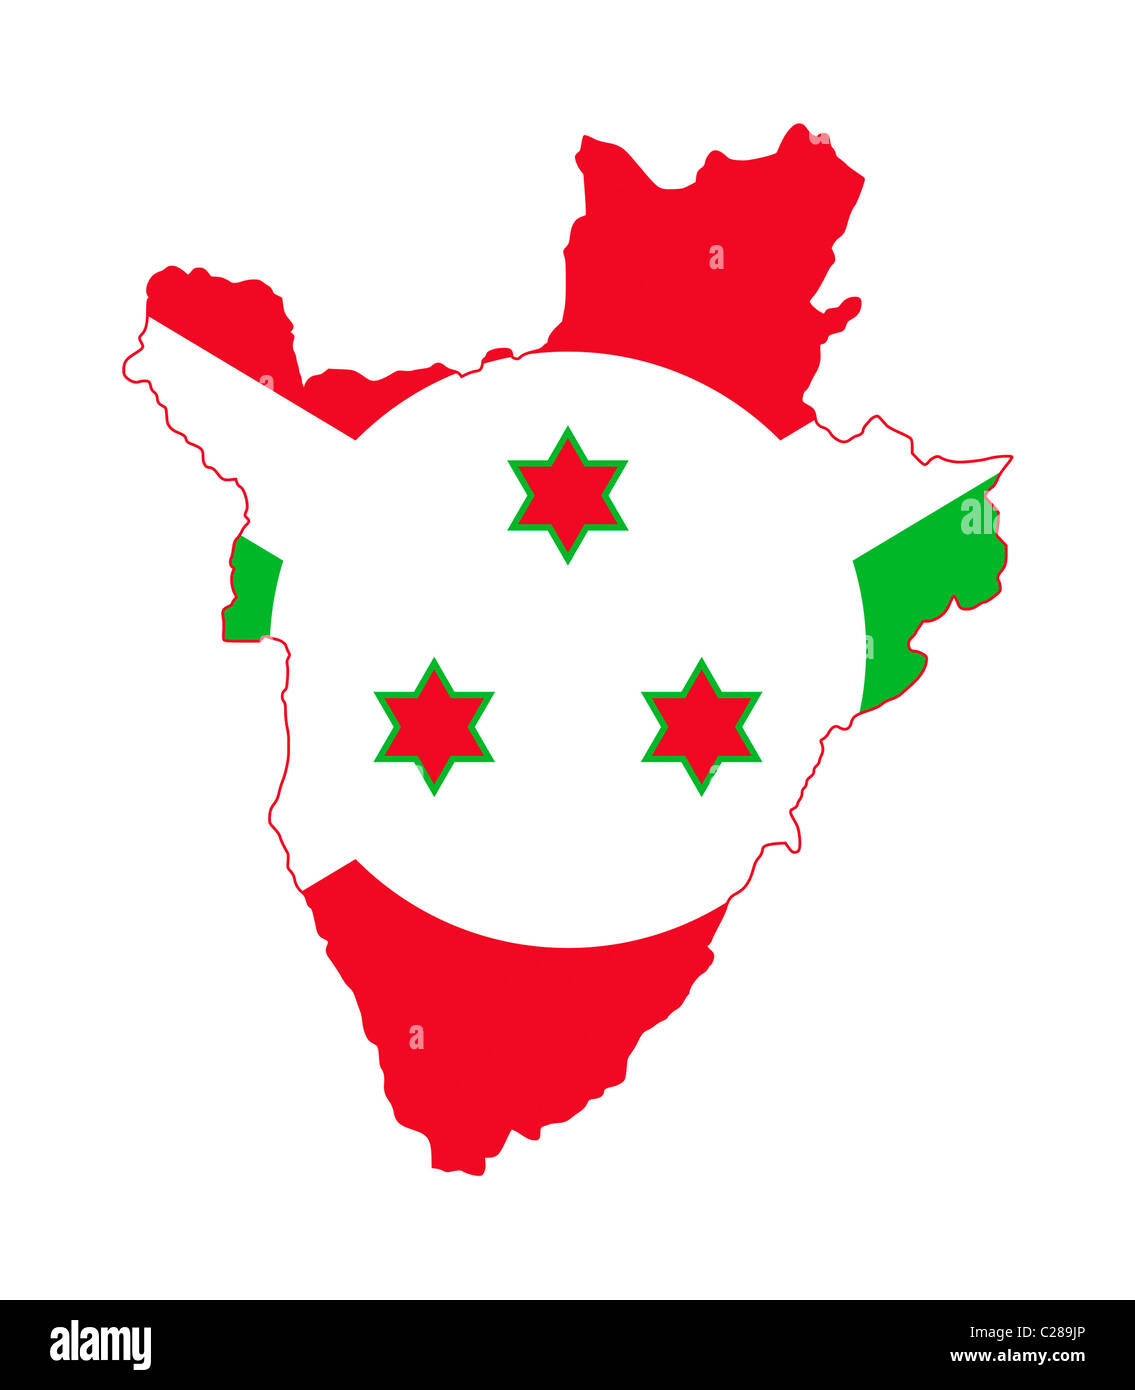 Illustration of Burundi flag on map of country; isolated on white background. Stock Photo